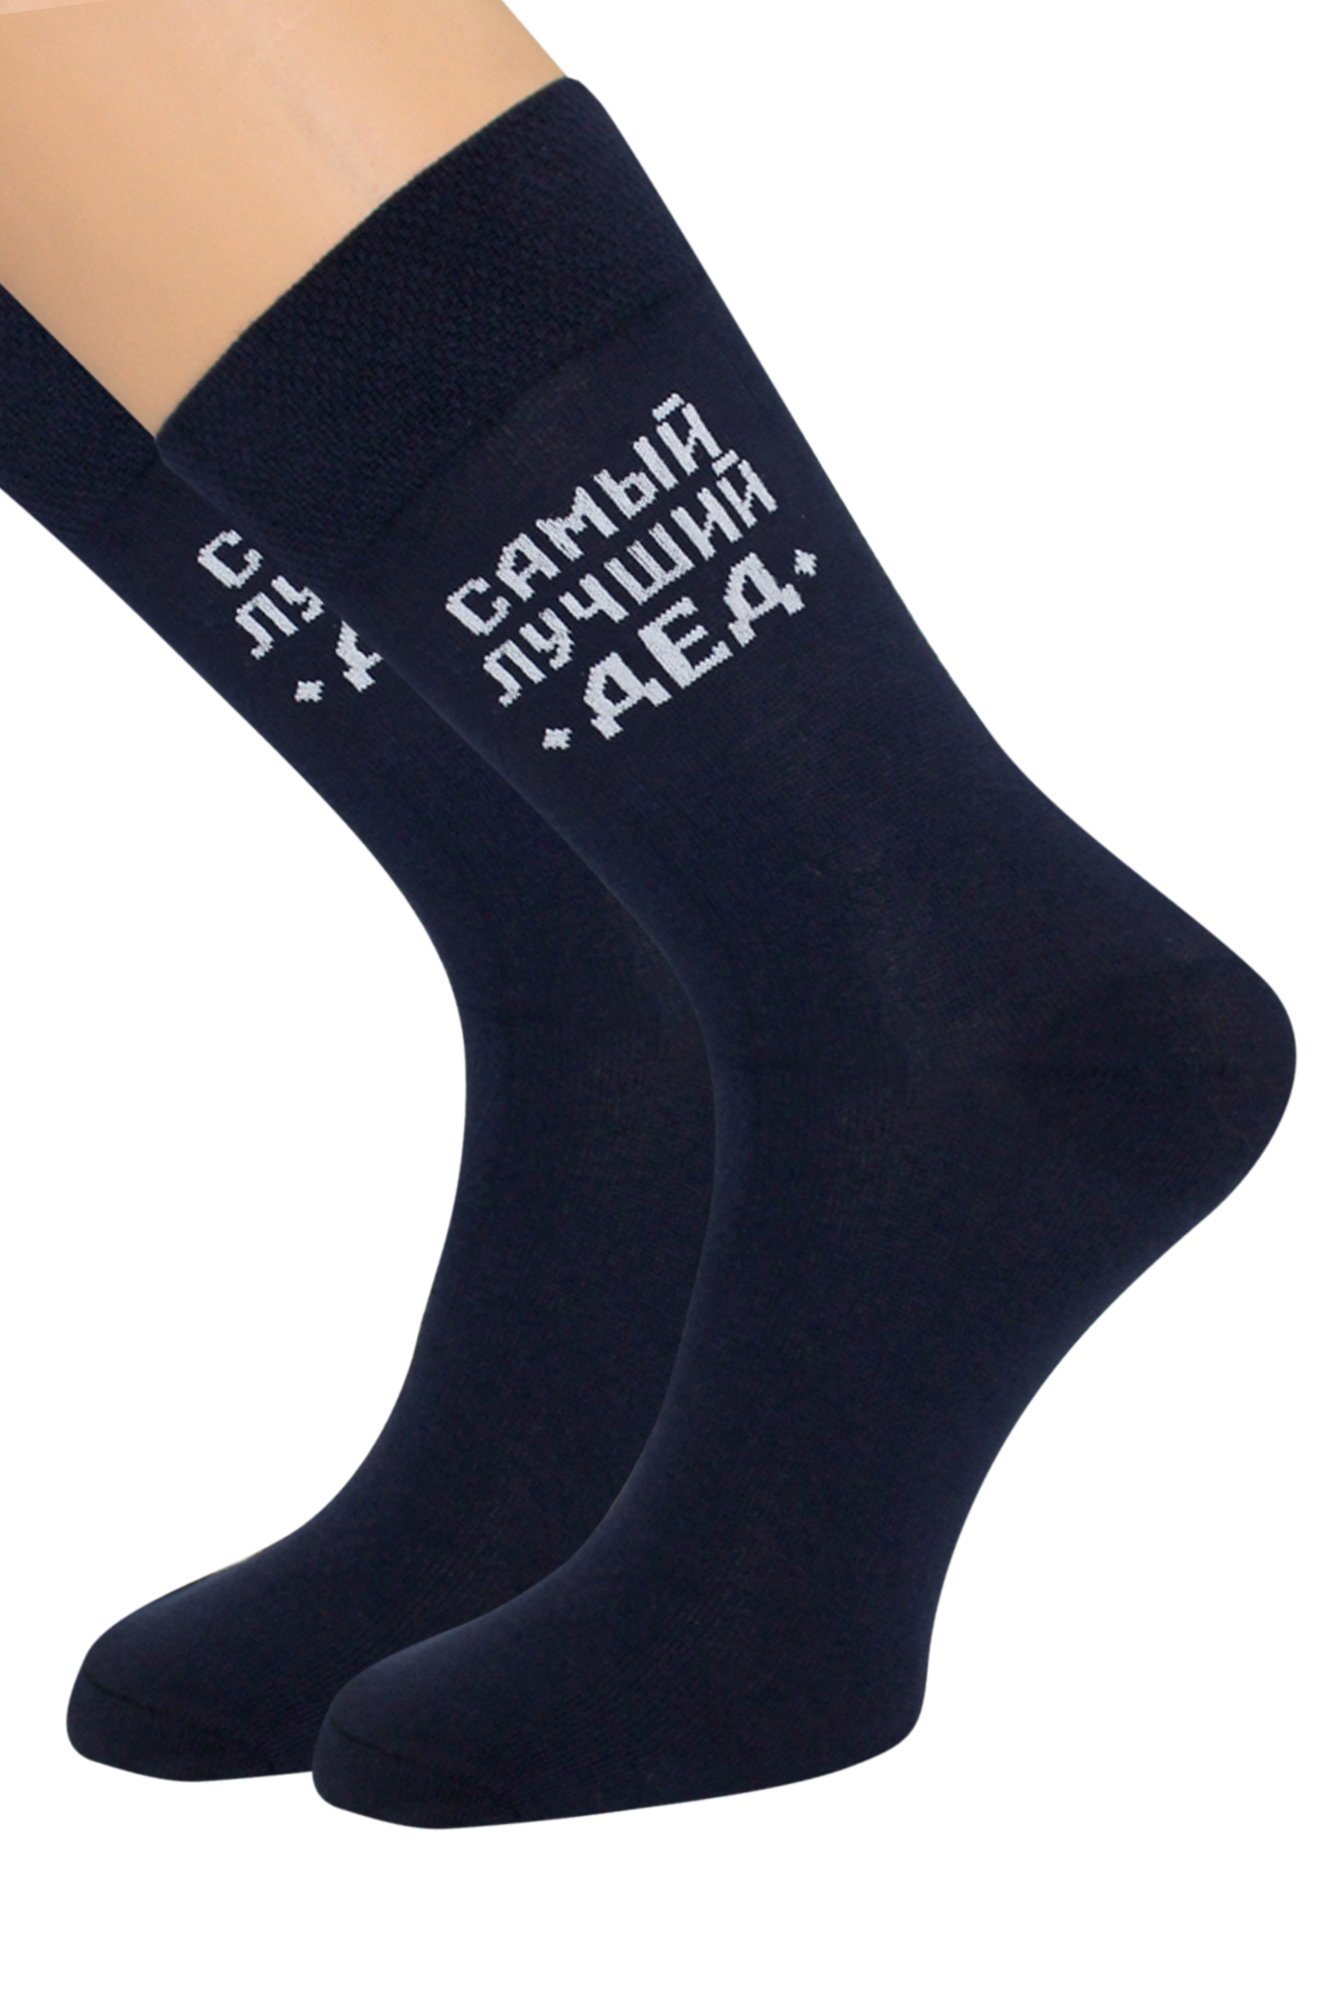 Подарочные мужские носки Touch